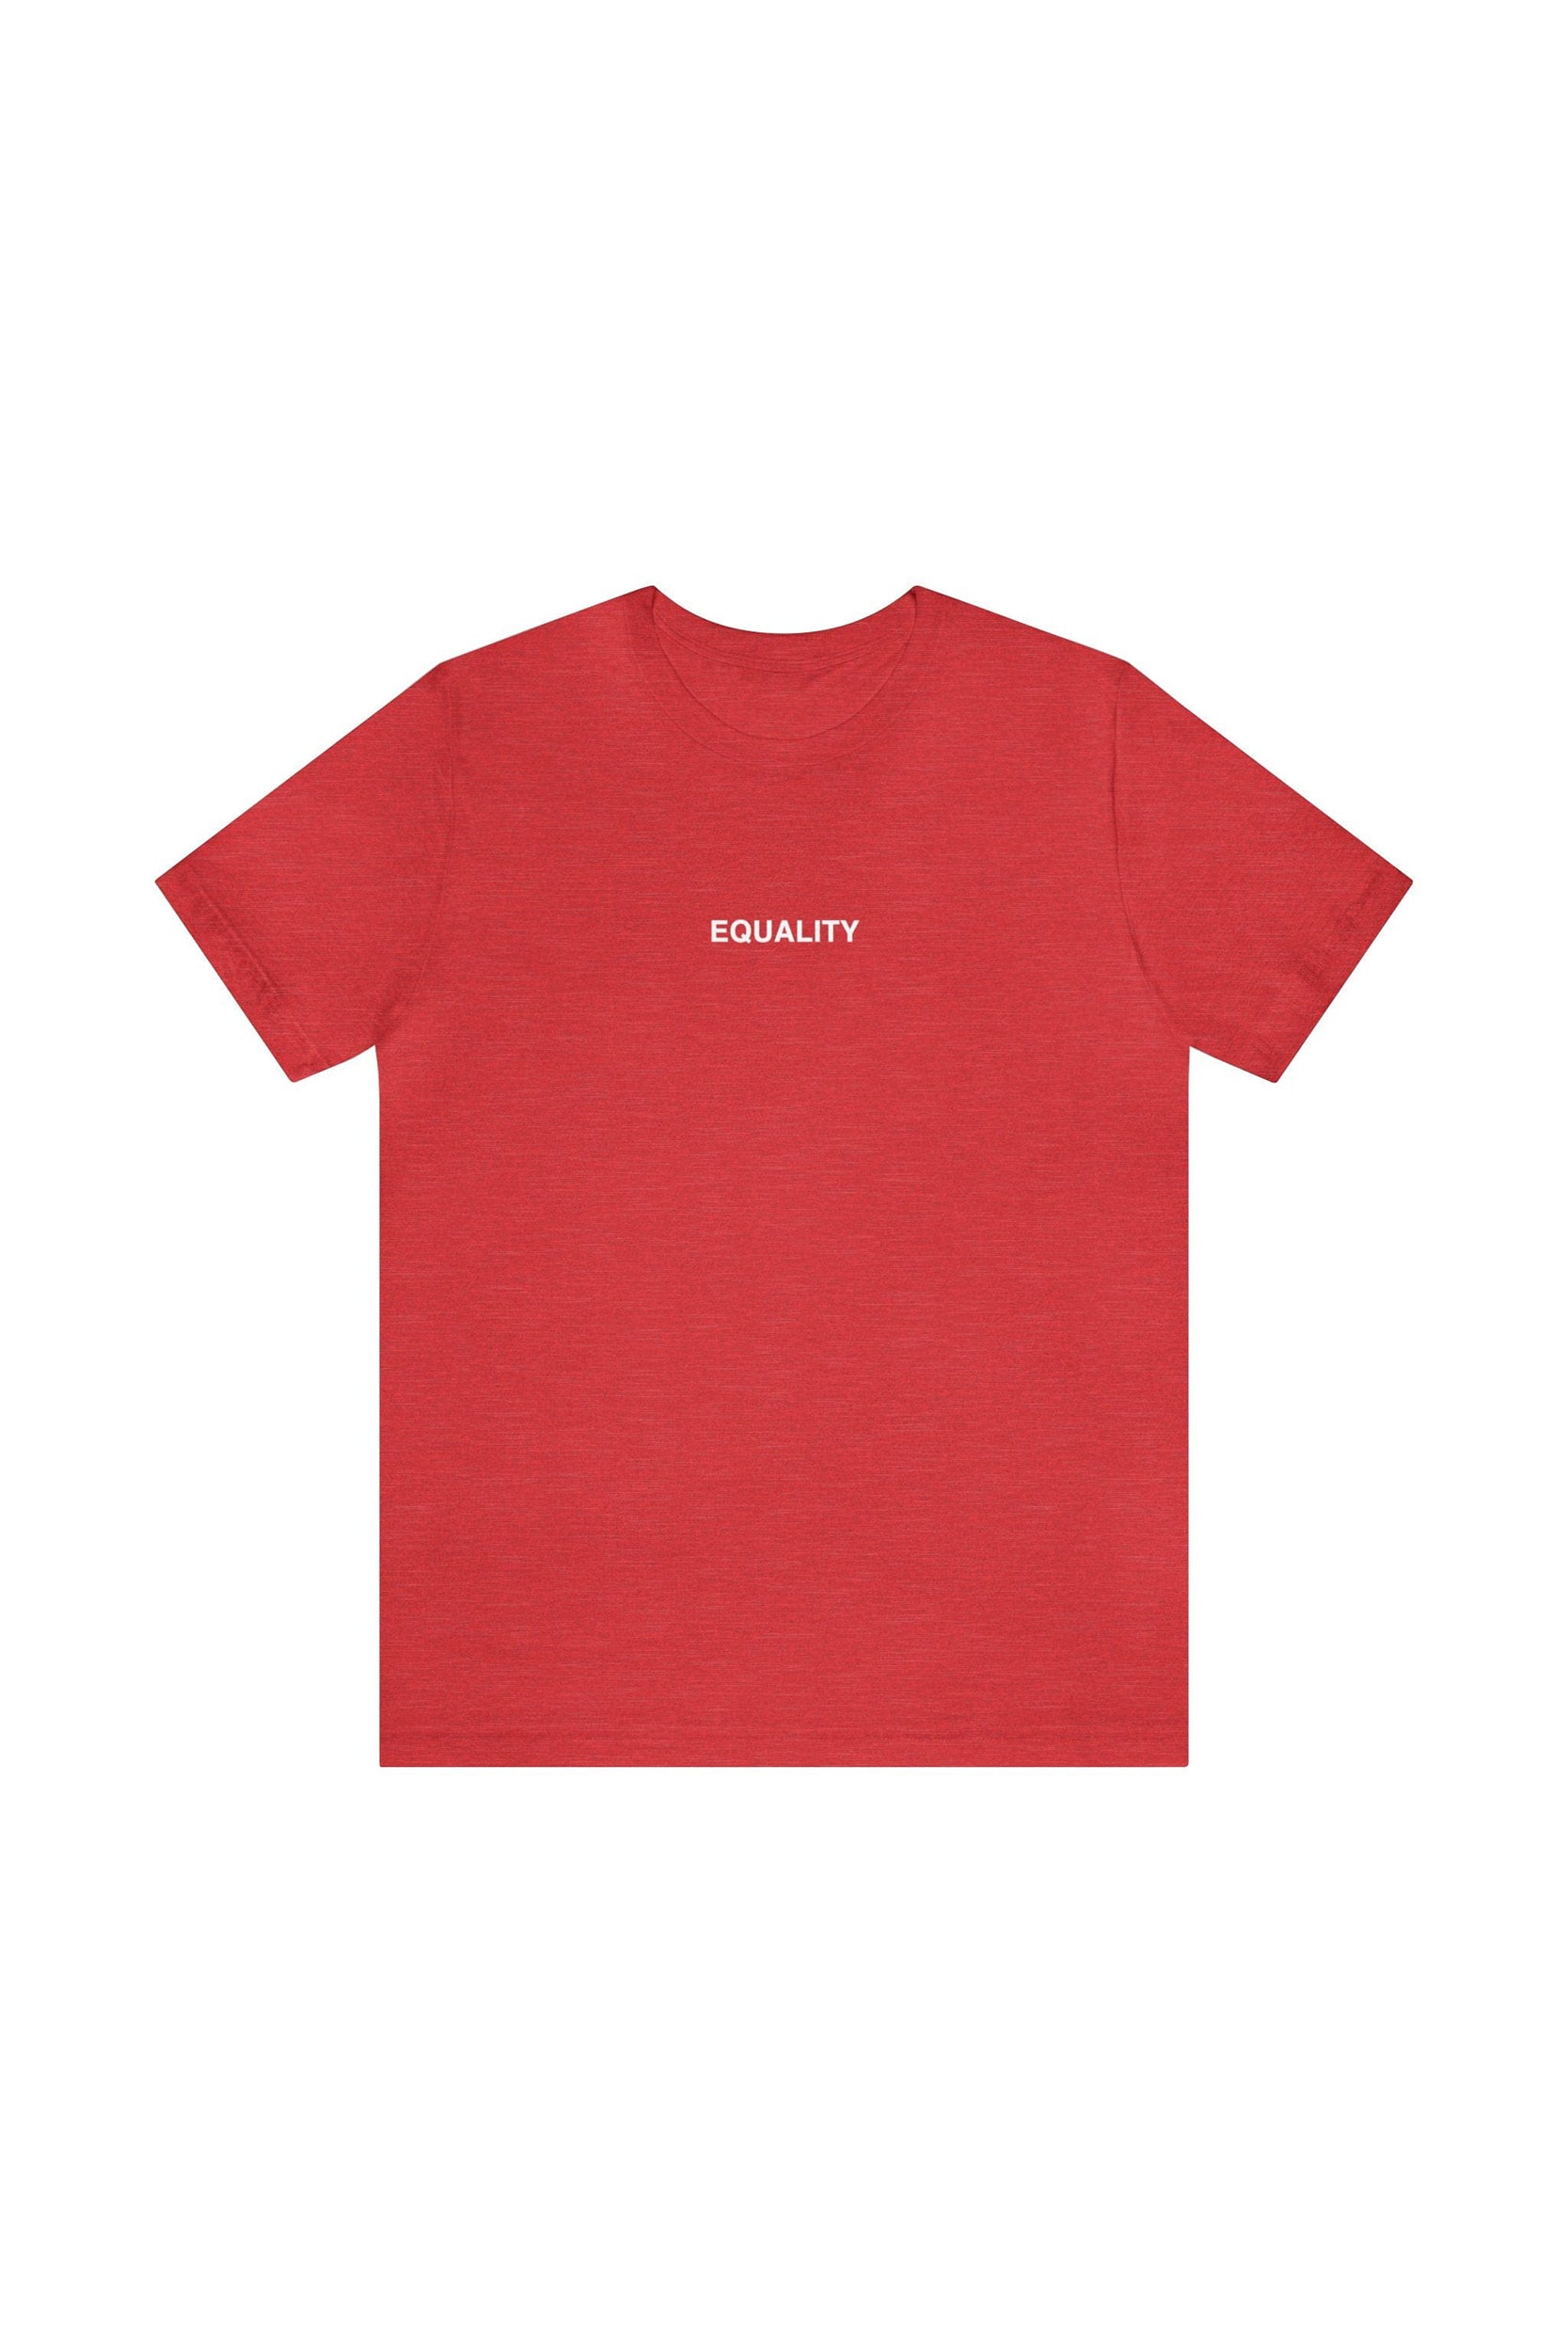 "EQUALITY" T-Shirt